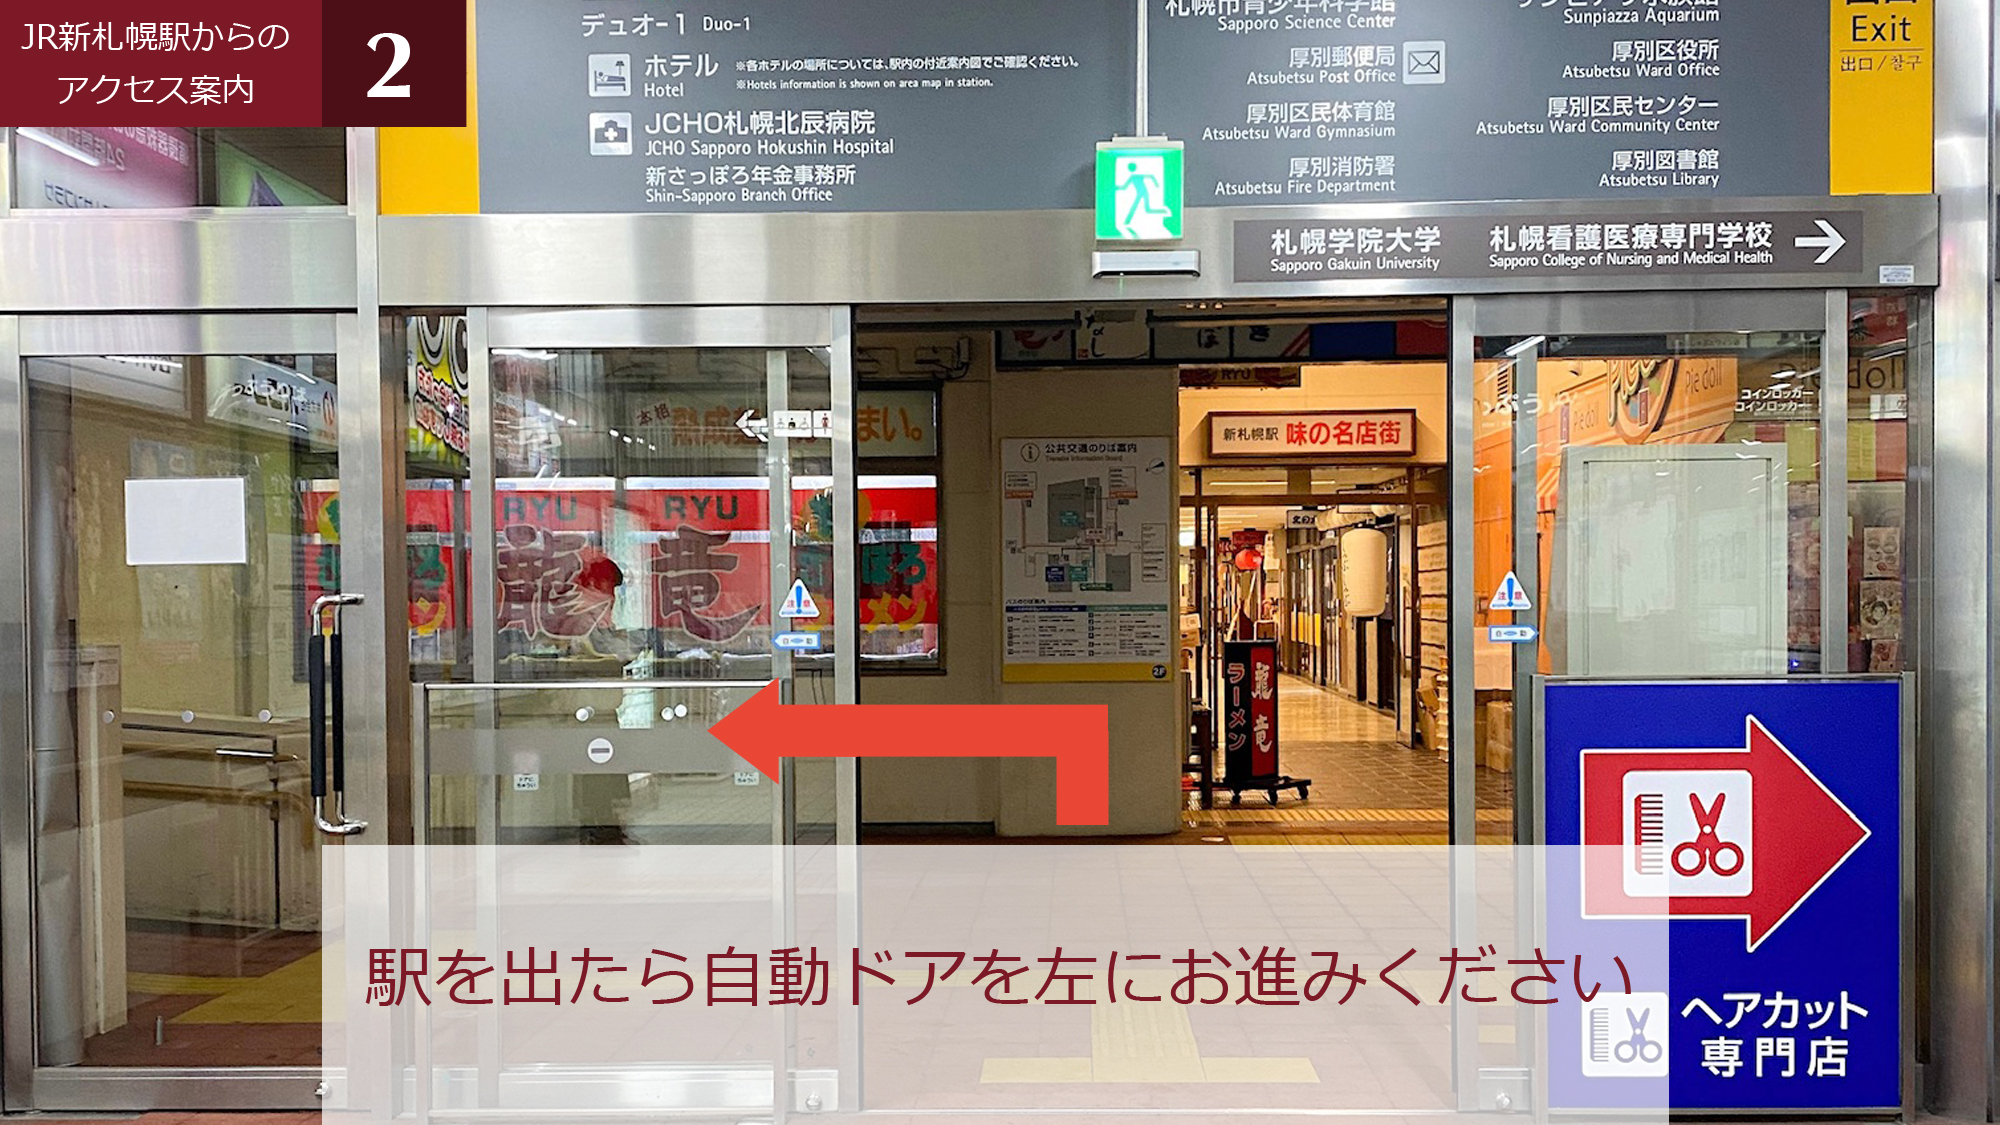 ②JR新札幌駅を出たら自動ドアを左へ。